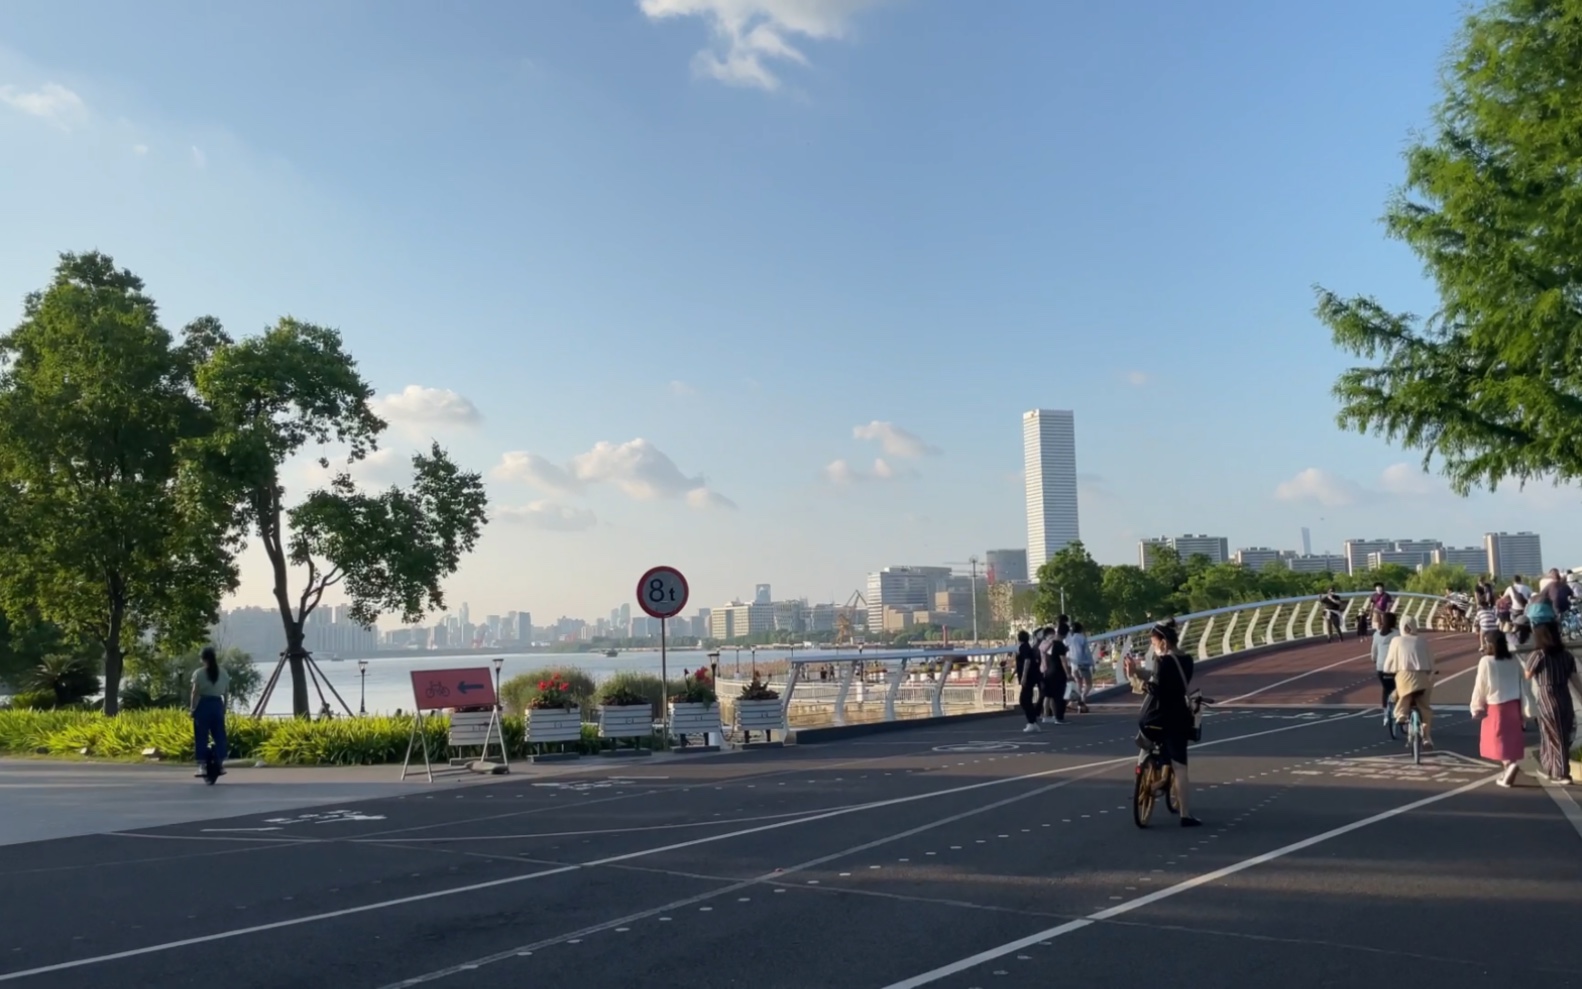 浦东滨江骑行道图片